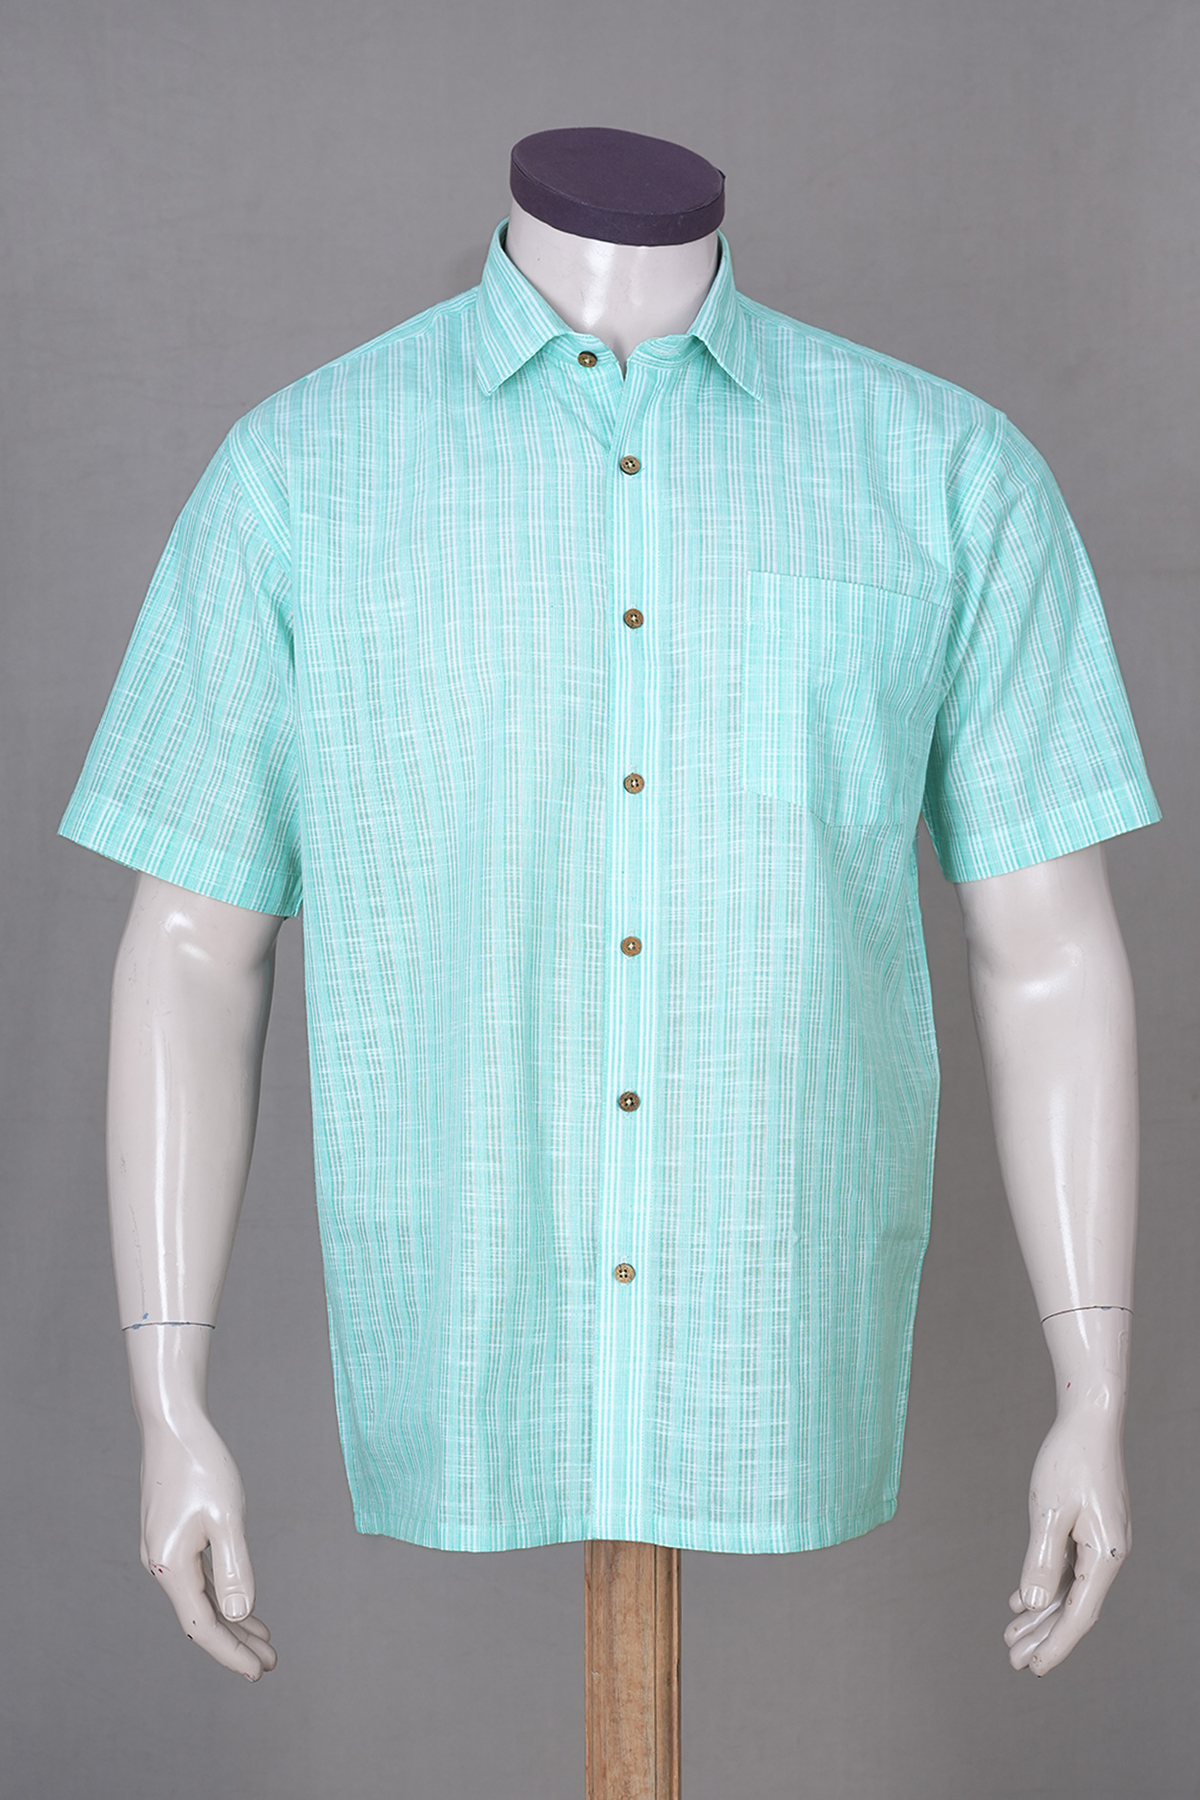 Regular Collar Stripes Design Mint Blue Linen Cotton Shirt